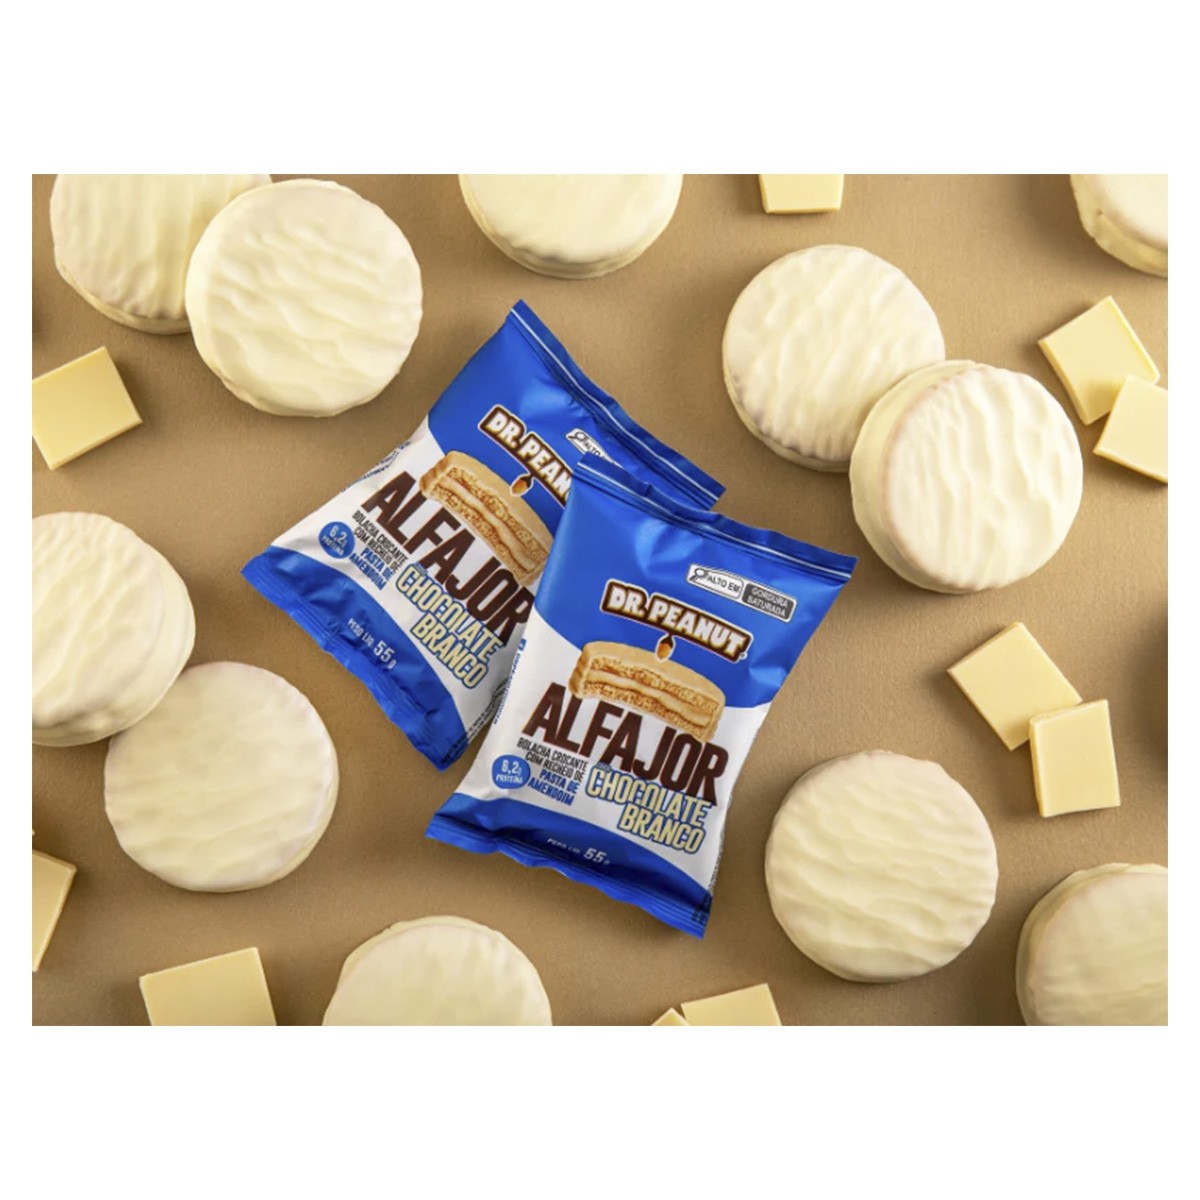 https://www.drogariaminasbrasil.com.br/media/product/da8/alfajor-com-whey-e-pasta-de-amendoim-sabor-chocolate-branco-55g-dr-peanut-d3c.jpg